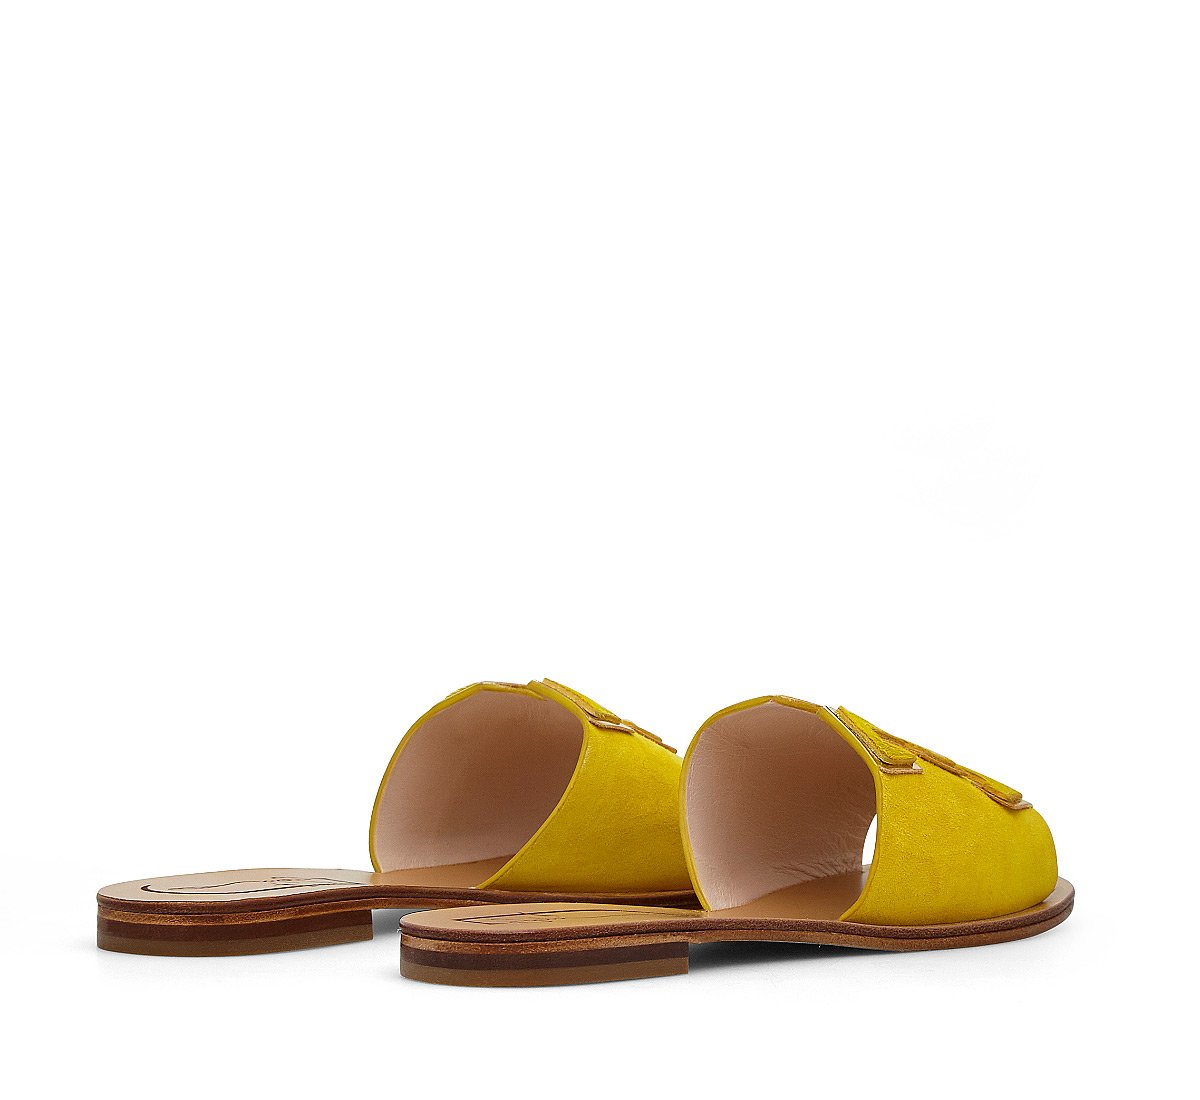 Calfskin slippers